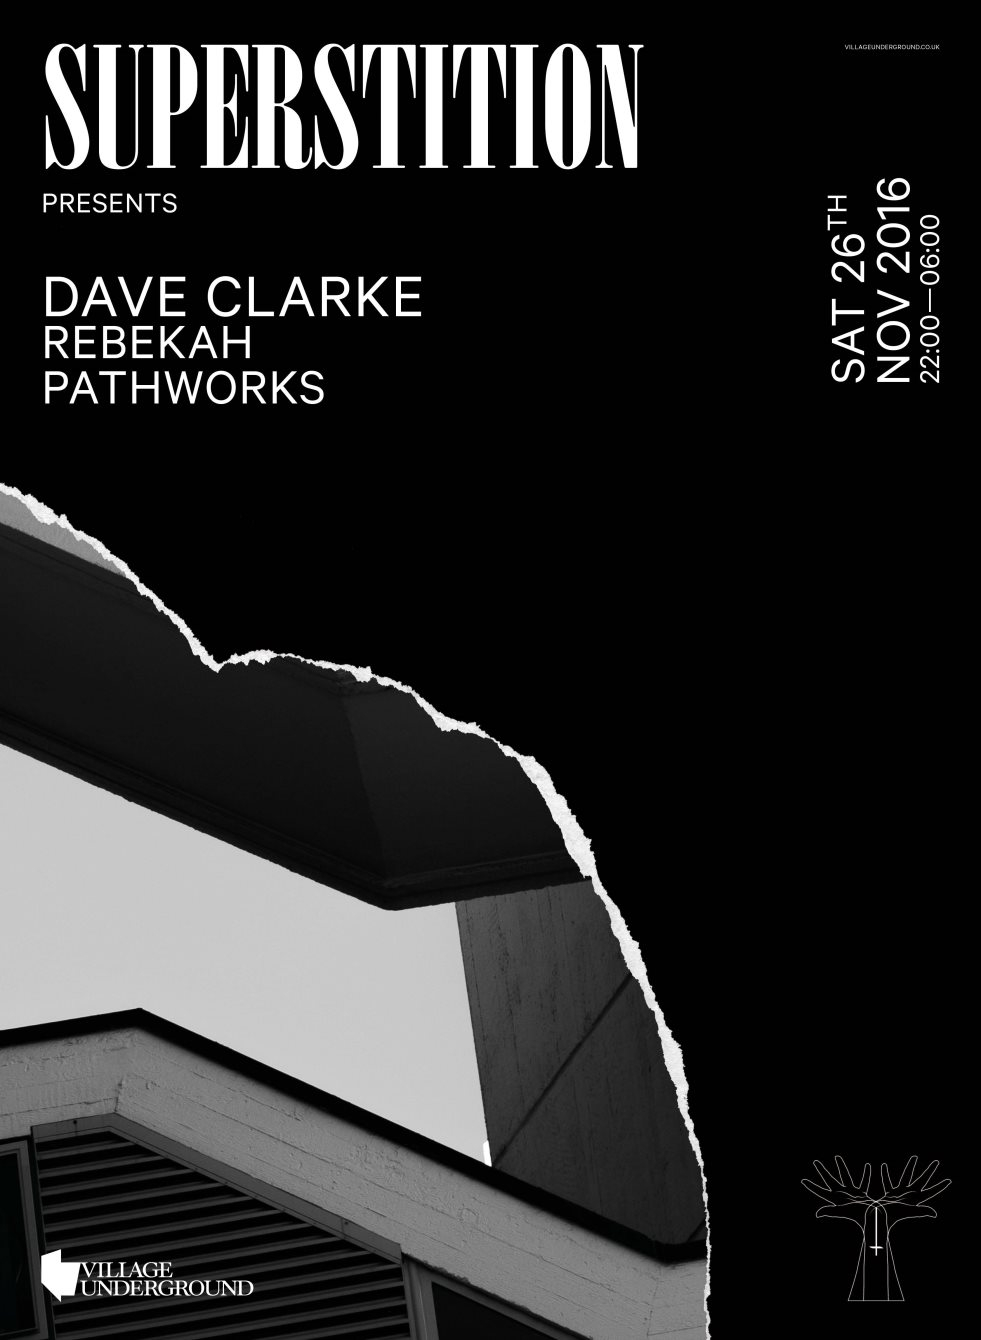 Superstition X Dave Clarke, Rebekah - Flyer front